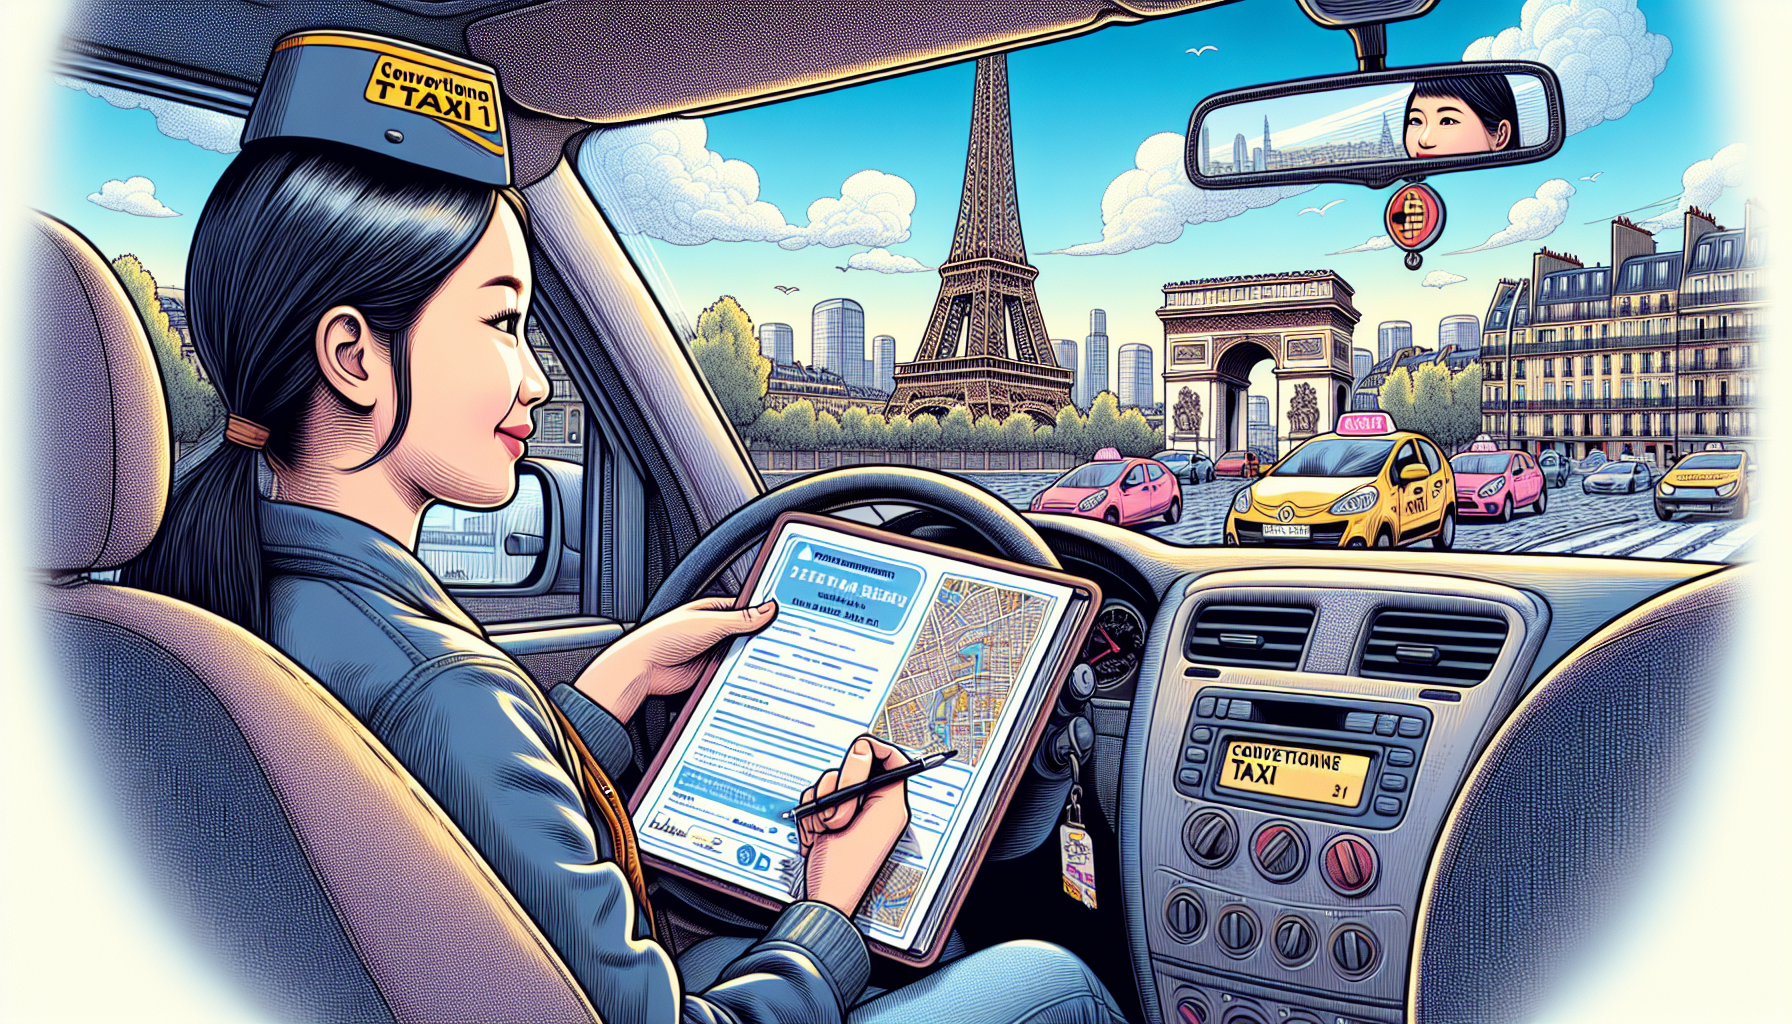 Comment devenir Taxi conventionné en France et en particulier à Paris